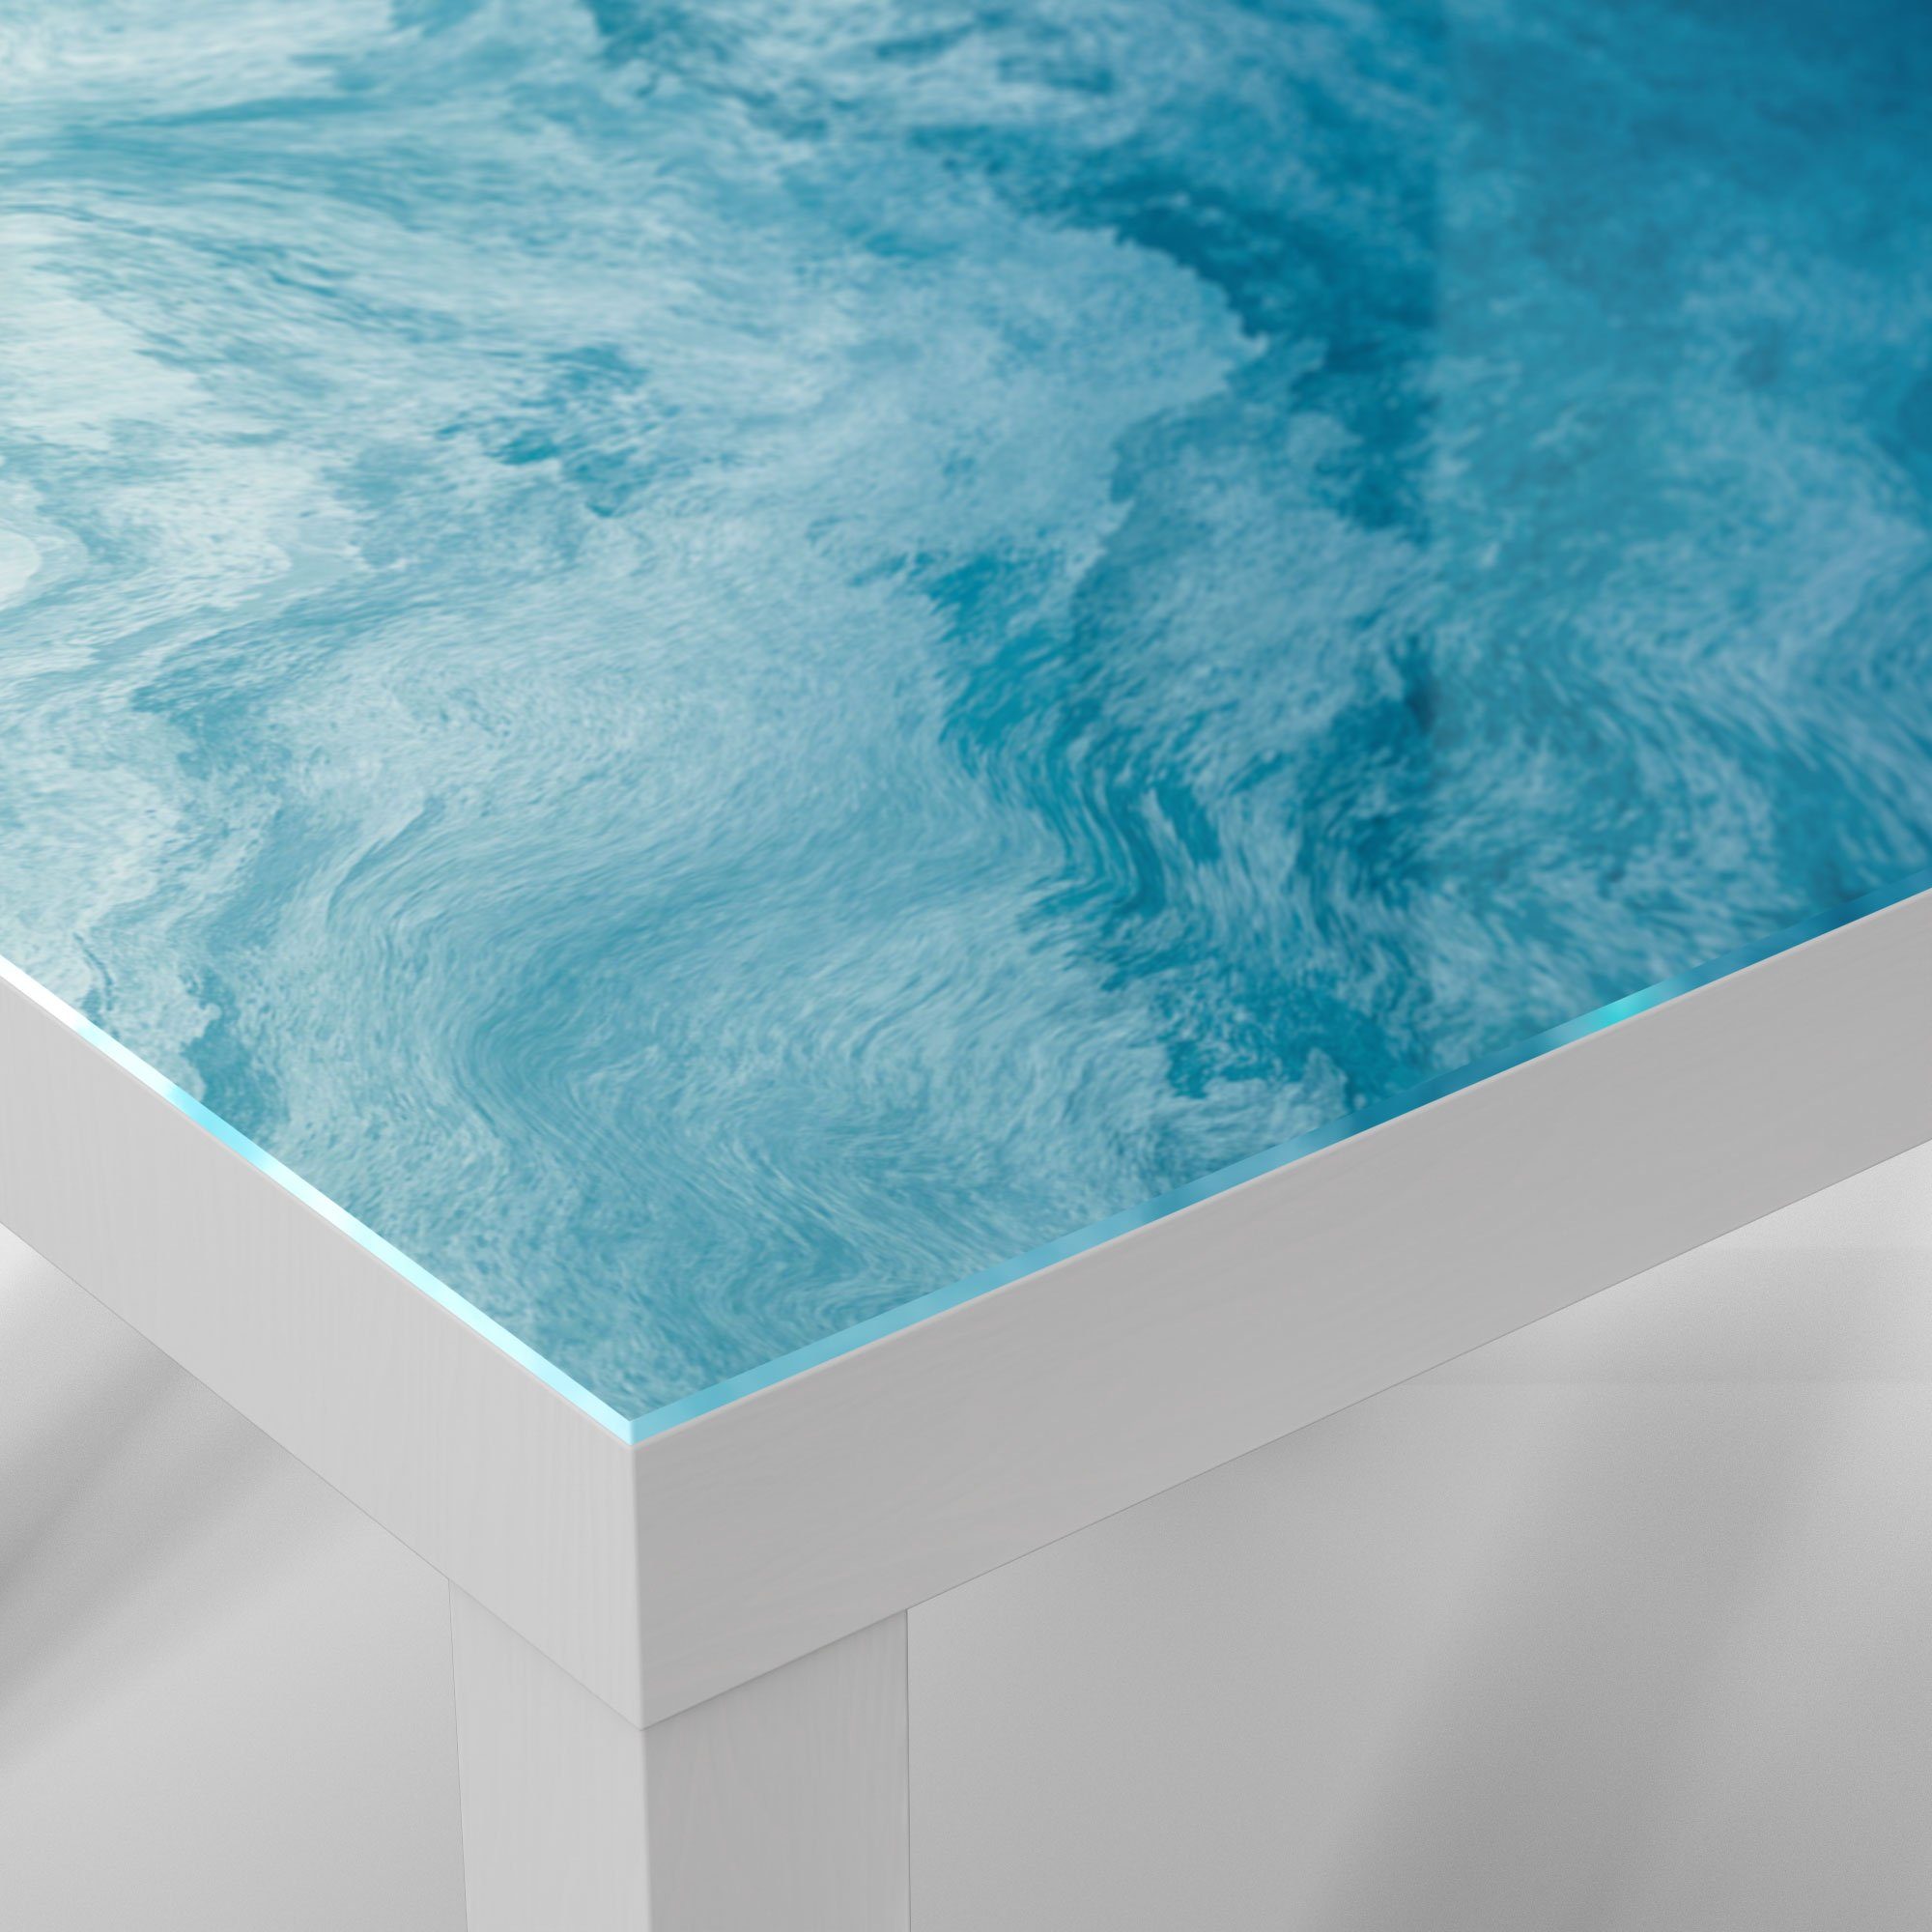 Glastisch Beistelltisch Wellen', DEQORI modern Weiß 'Aufgewühlte Couchtisch Glas